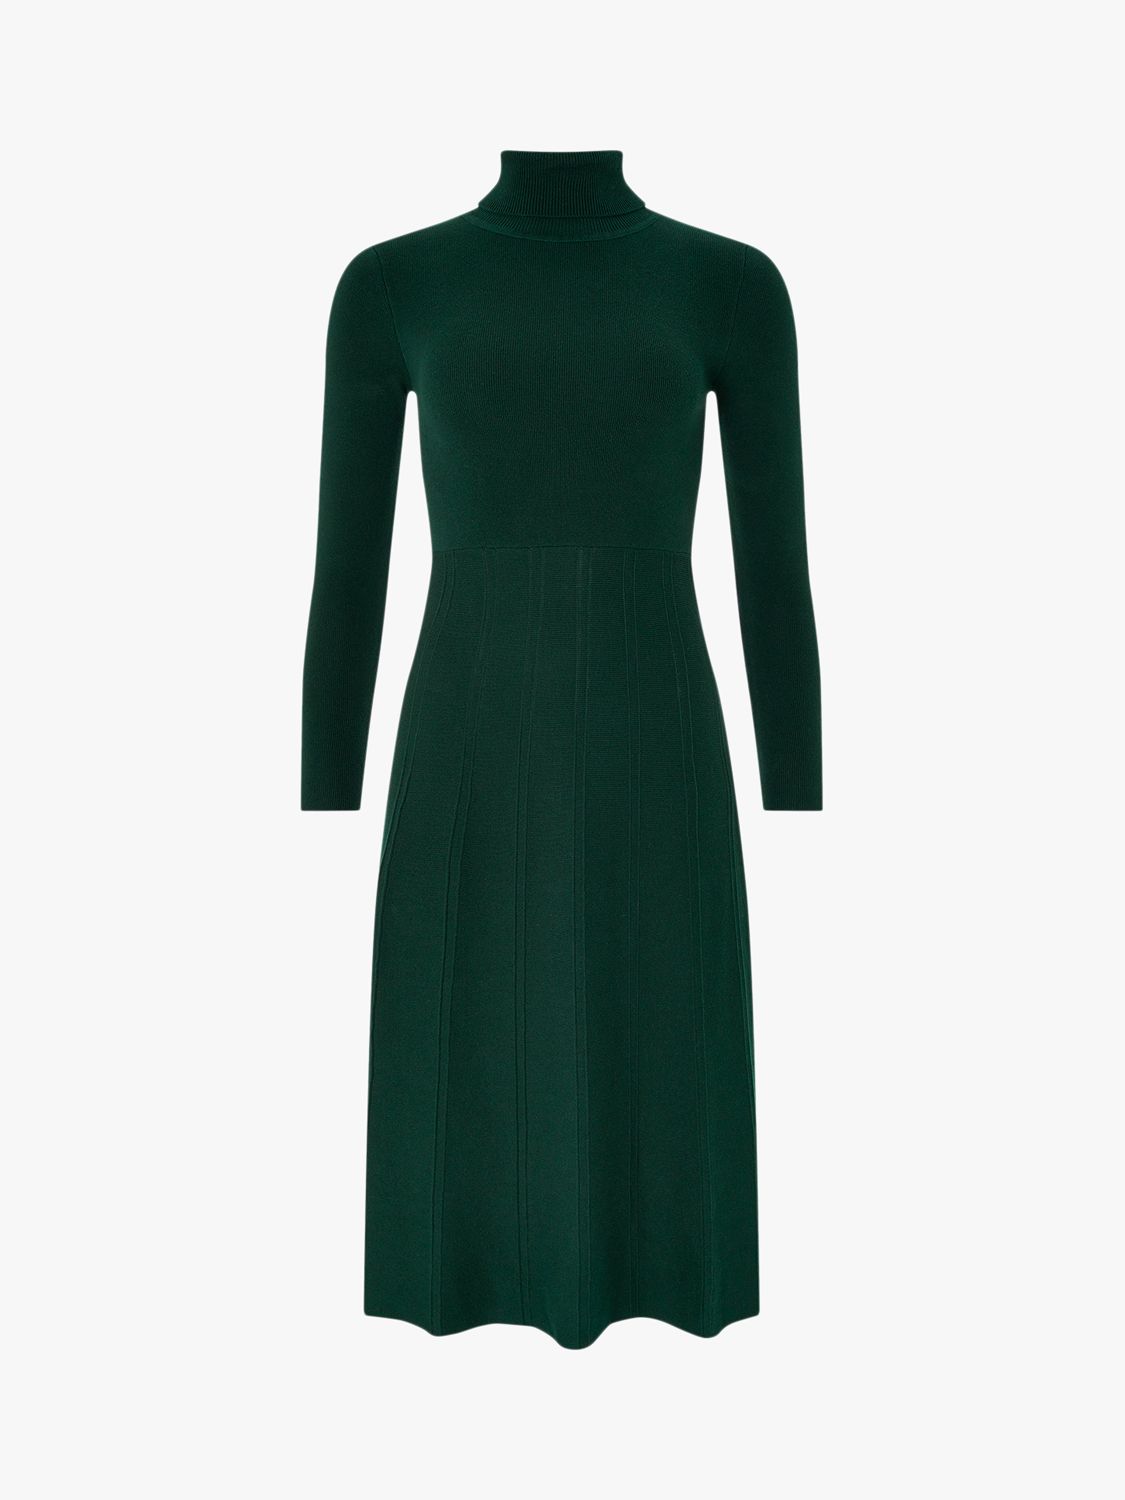 Monsoon Tessa Knitted Dress, Green